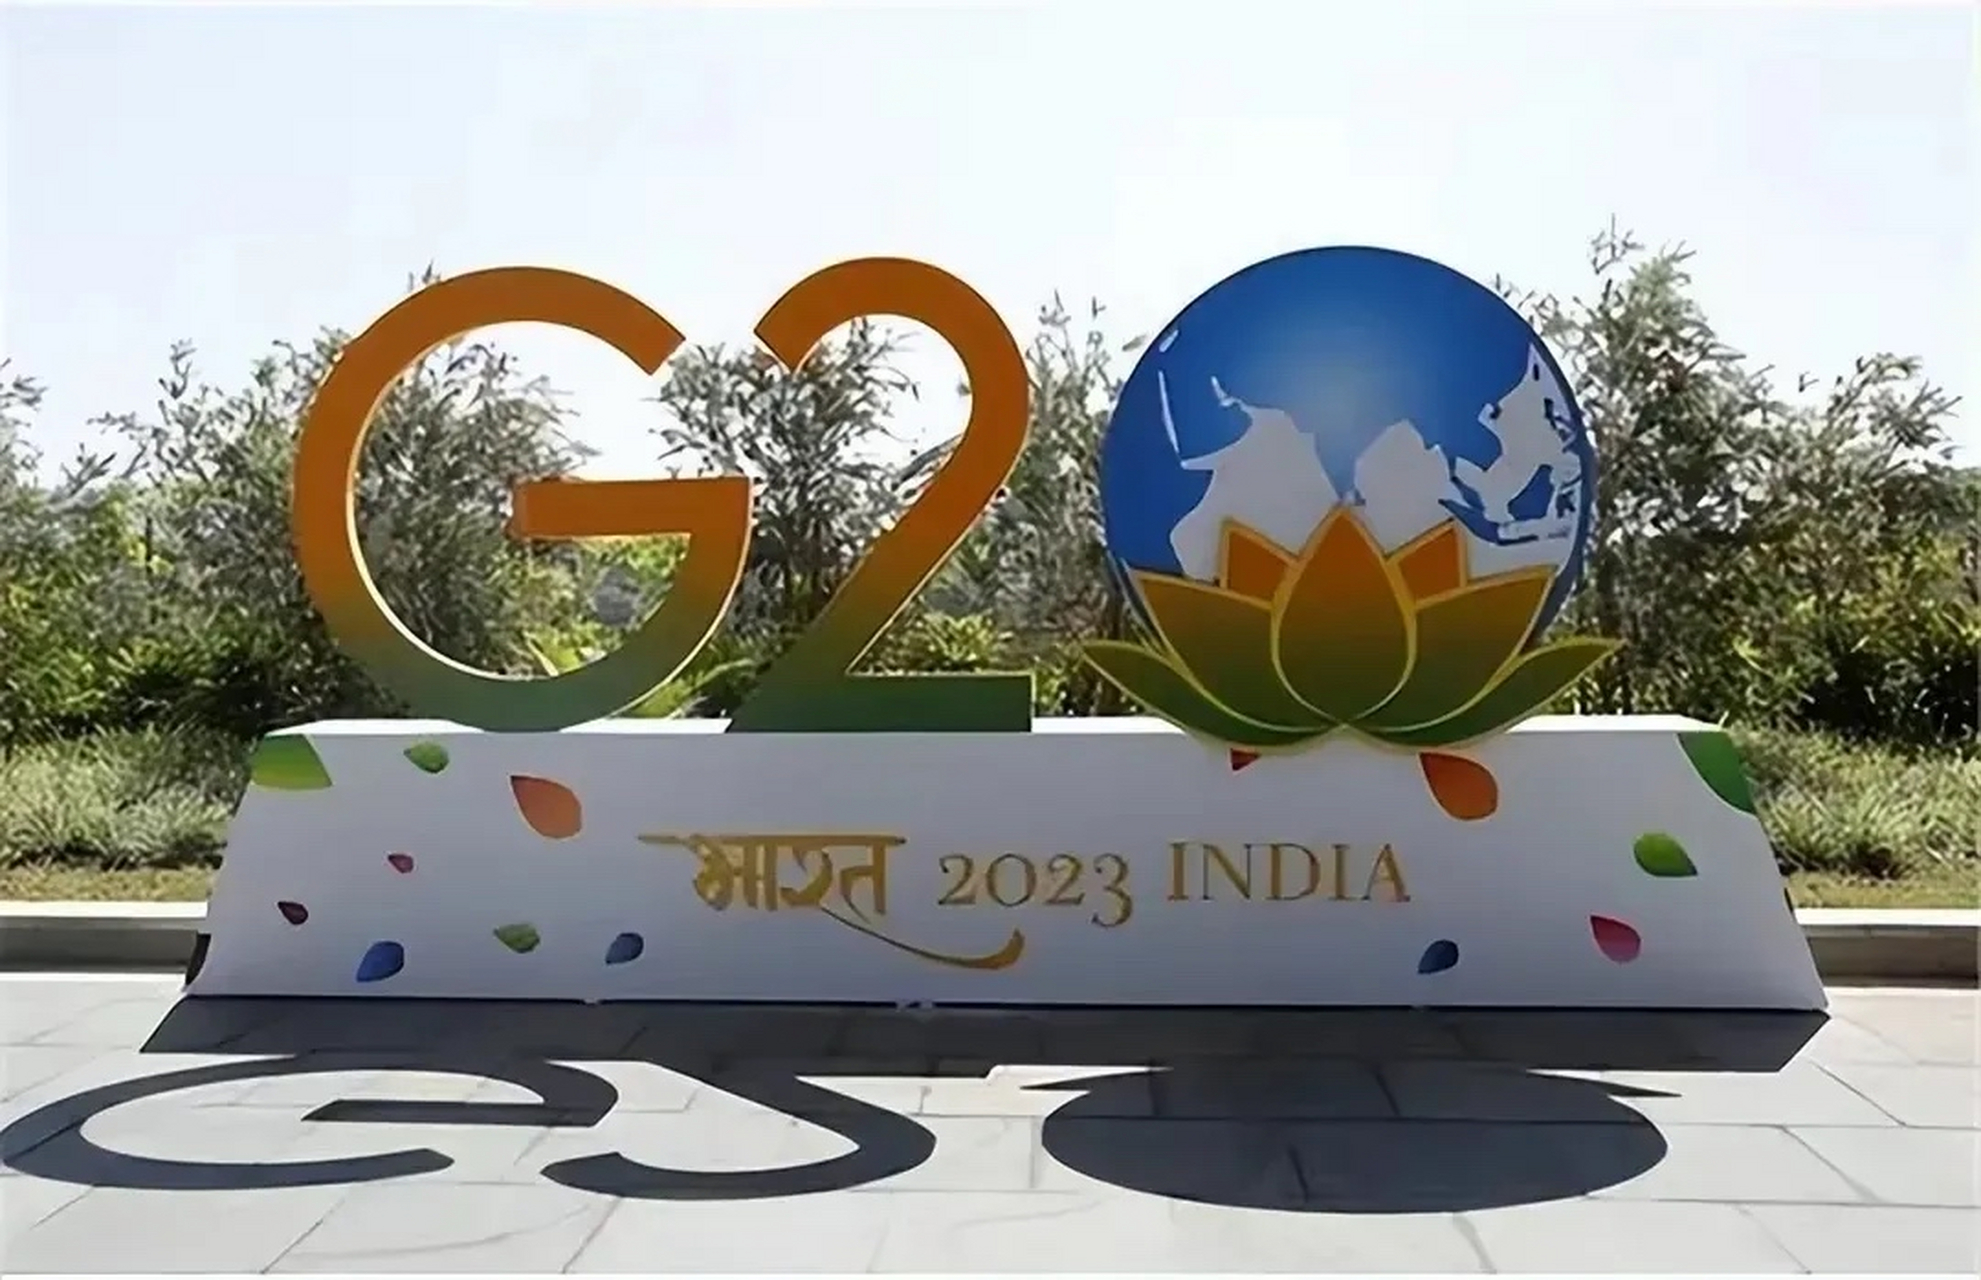 我国拒绝参加将在印度举办的g20峰会,一些国家表示响应